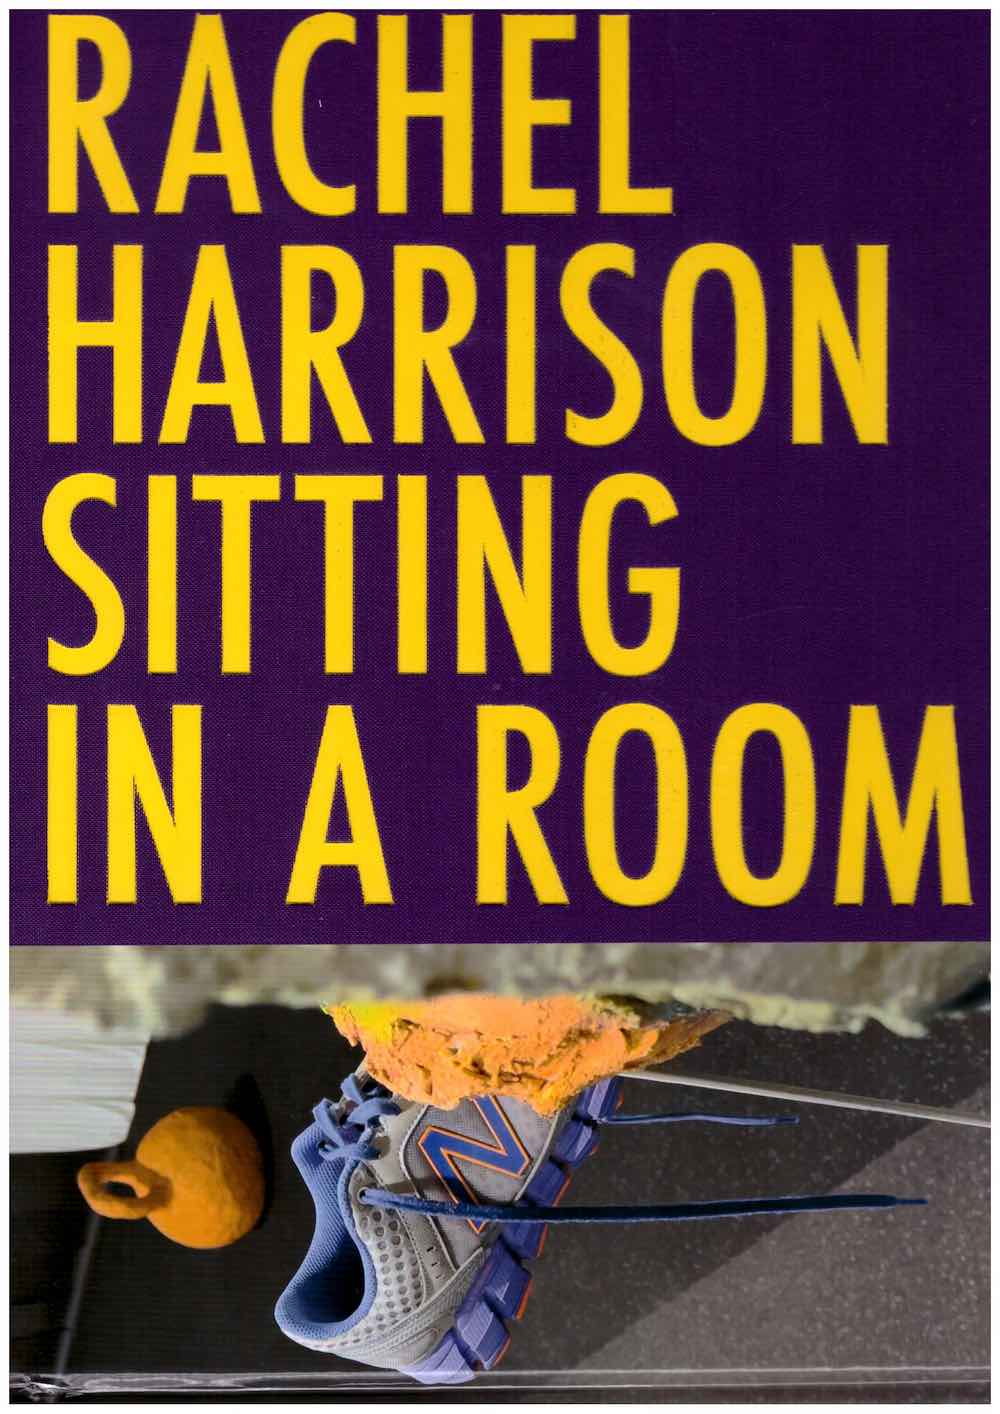 HARRISON, Rachel; ØVSTEBO, Solveig (ed.) - Rachel Harrison: Sitting in a Room